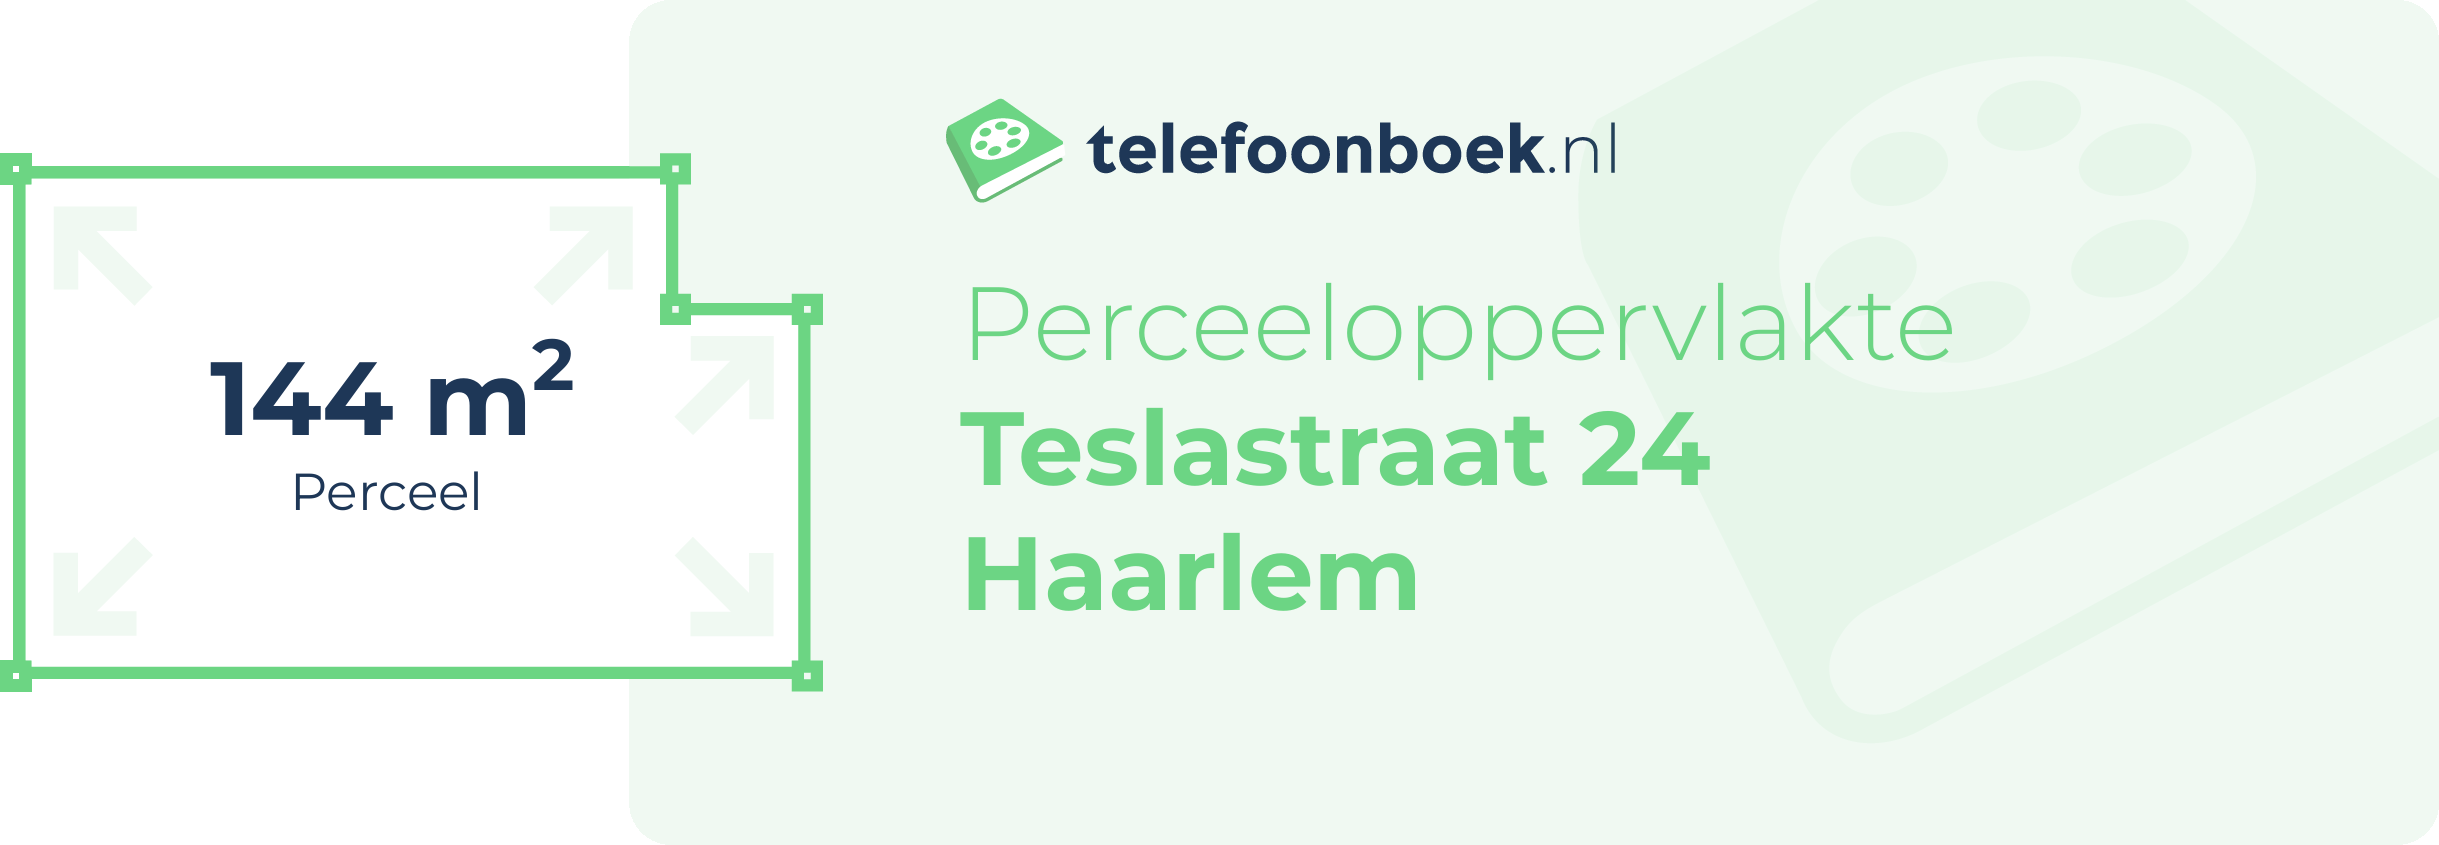 Perceeloppervlakte Teslastraat 24 Haarlem